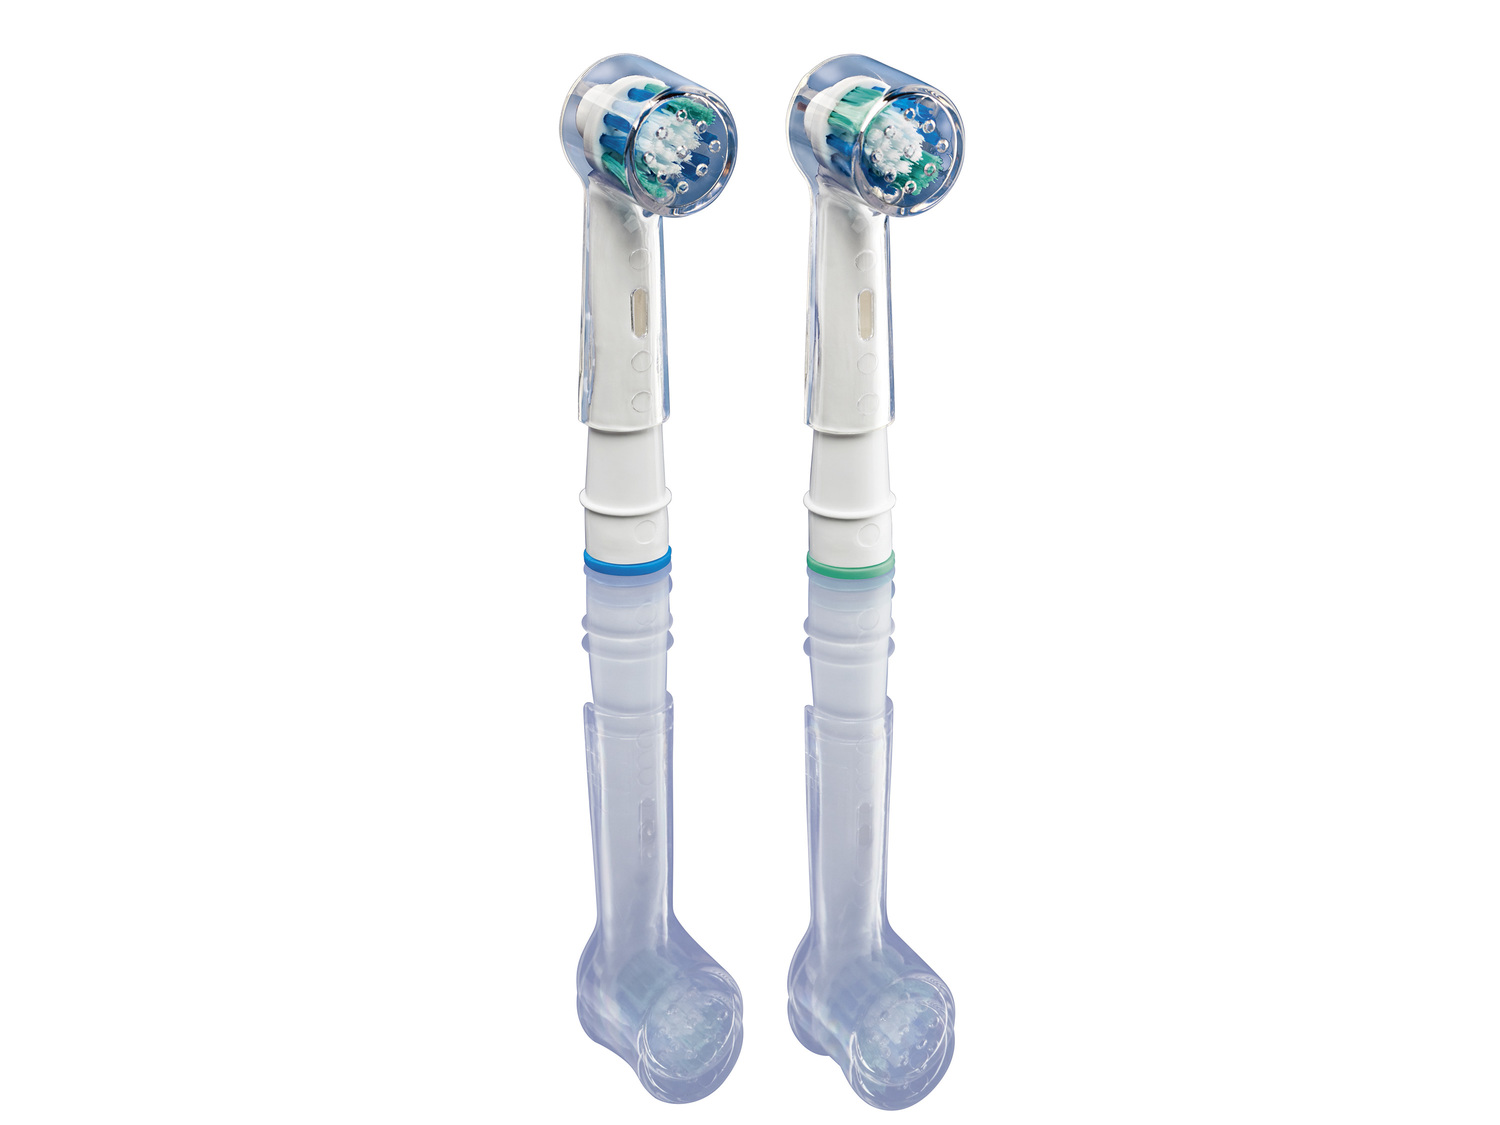 Elektryczna szczoteczka do zębów Nevadent, cena 64,90 PLN 
3 poziomy czyszczenia:
- ...